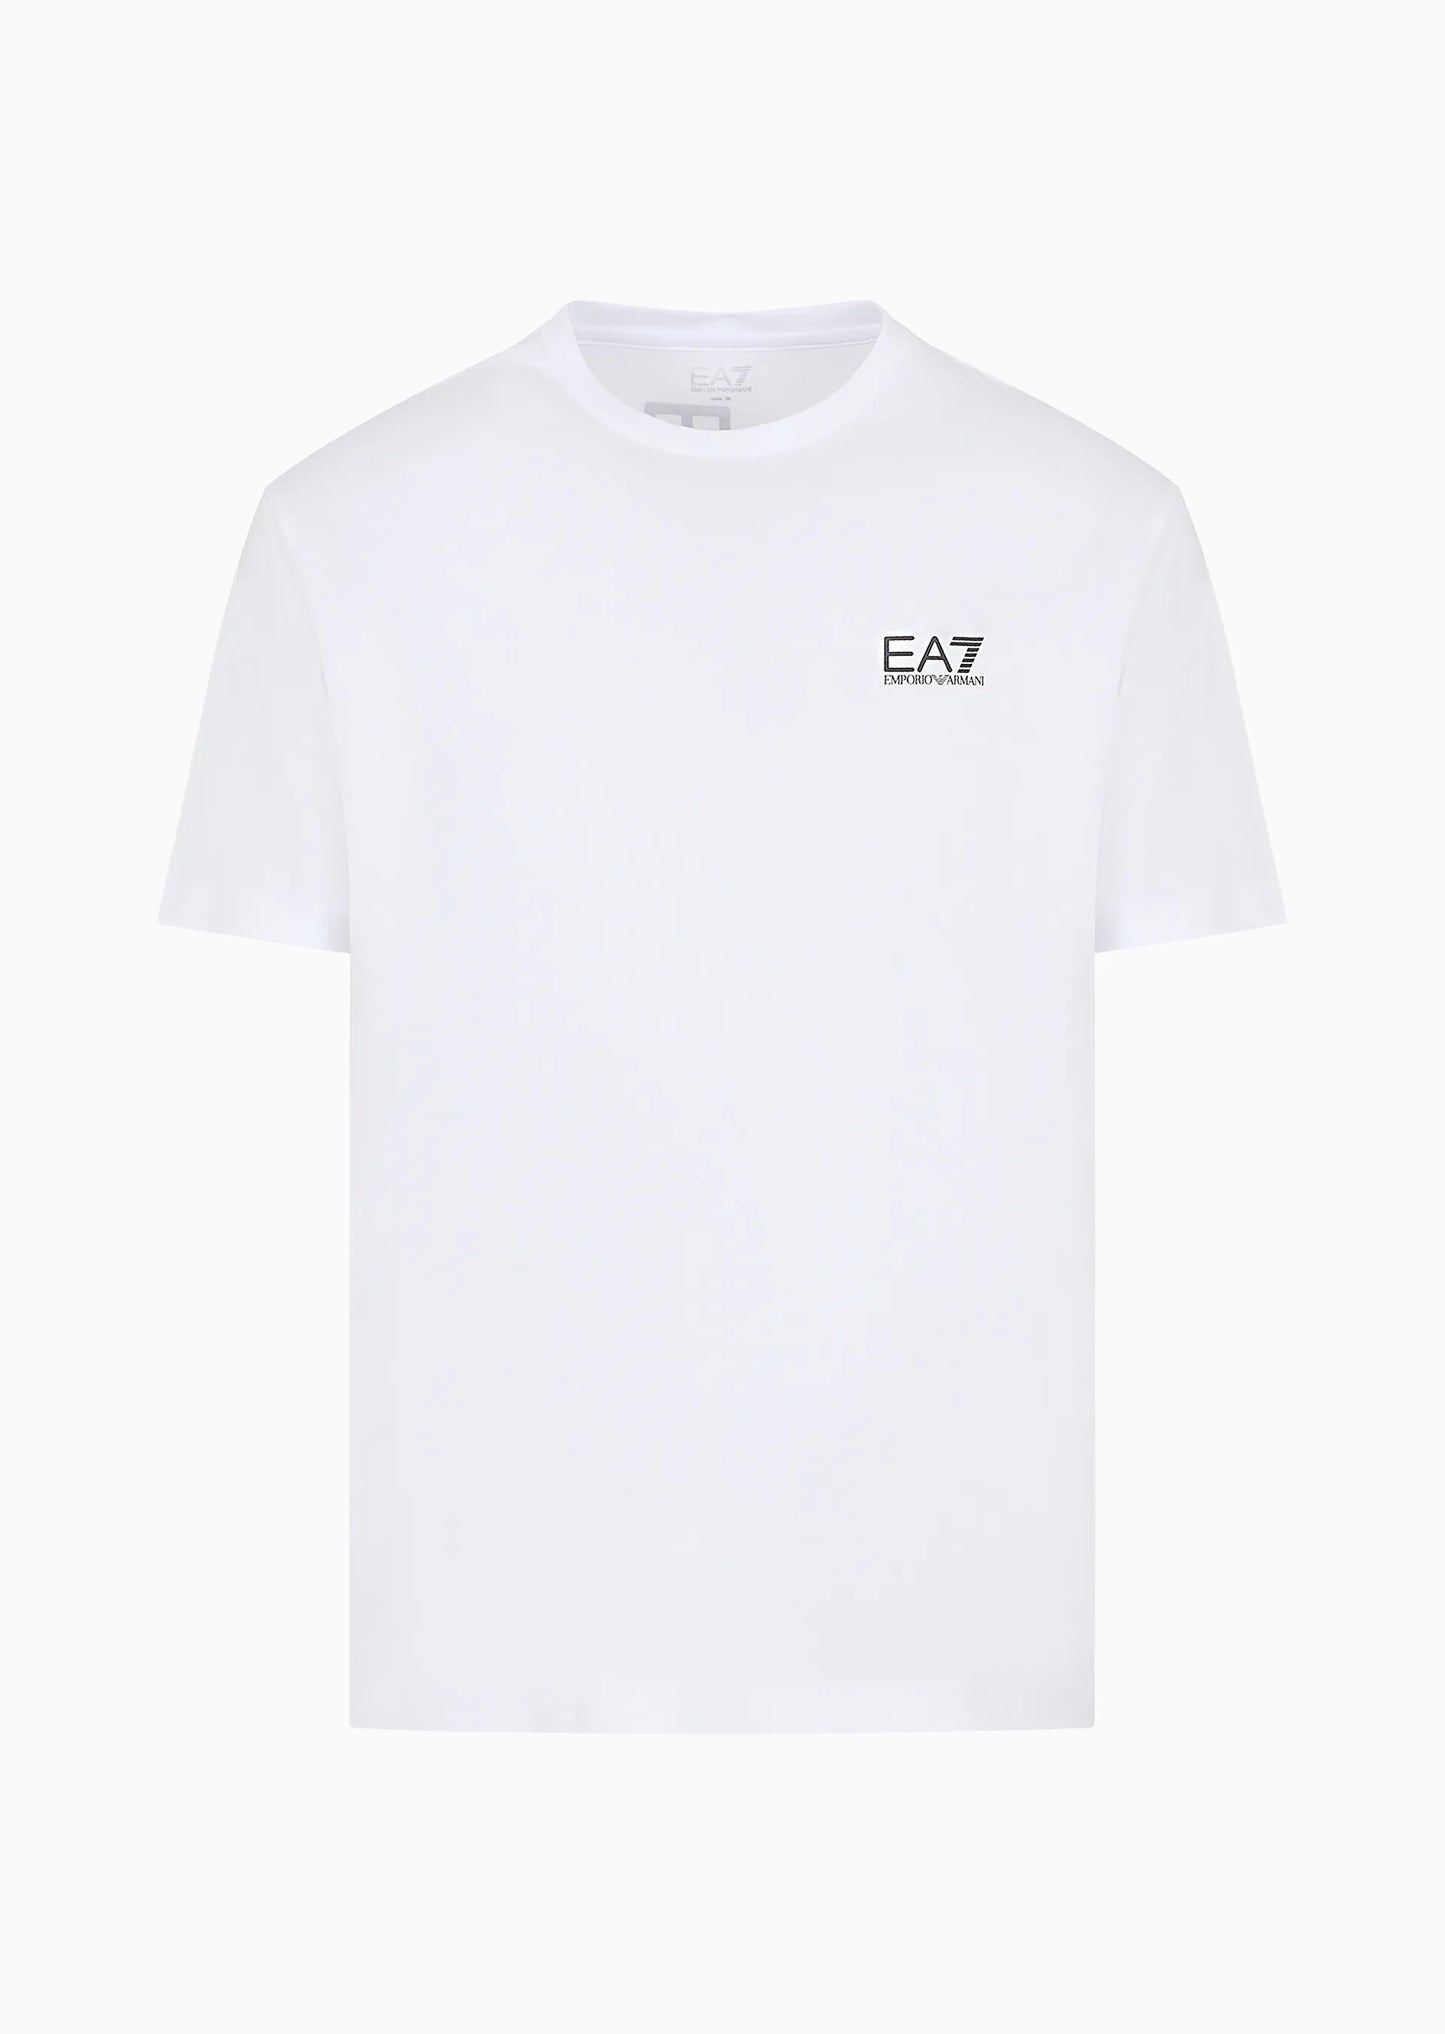 Camiseta EA7 - 8NPT18 PJ02Z 1100